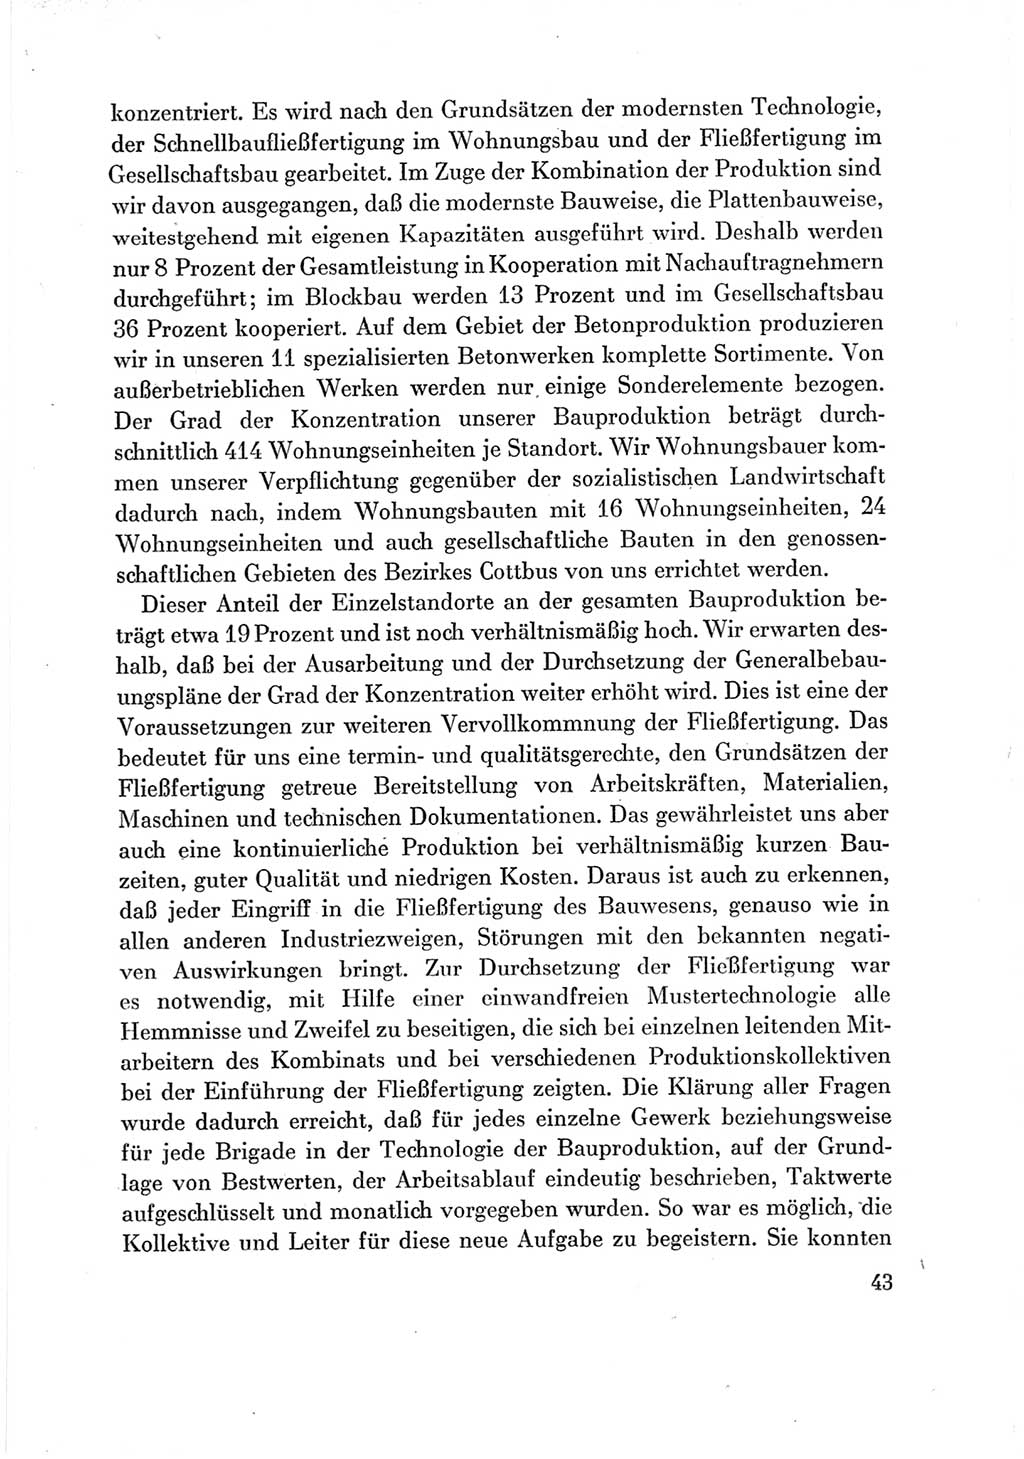 Protokoll der Verhandlungen des Ⅶ. Parteitages der Sozialistischen Einheitspartei Deutschlands (SED) [Deutsche Demokratische Republik (DDR)] 1967, Band Ⅲ, Seite 43 (Prot. Verh. Ⅶ. PT SED DDR 1967, Bd. Ⅲ, S. 43)